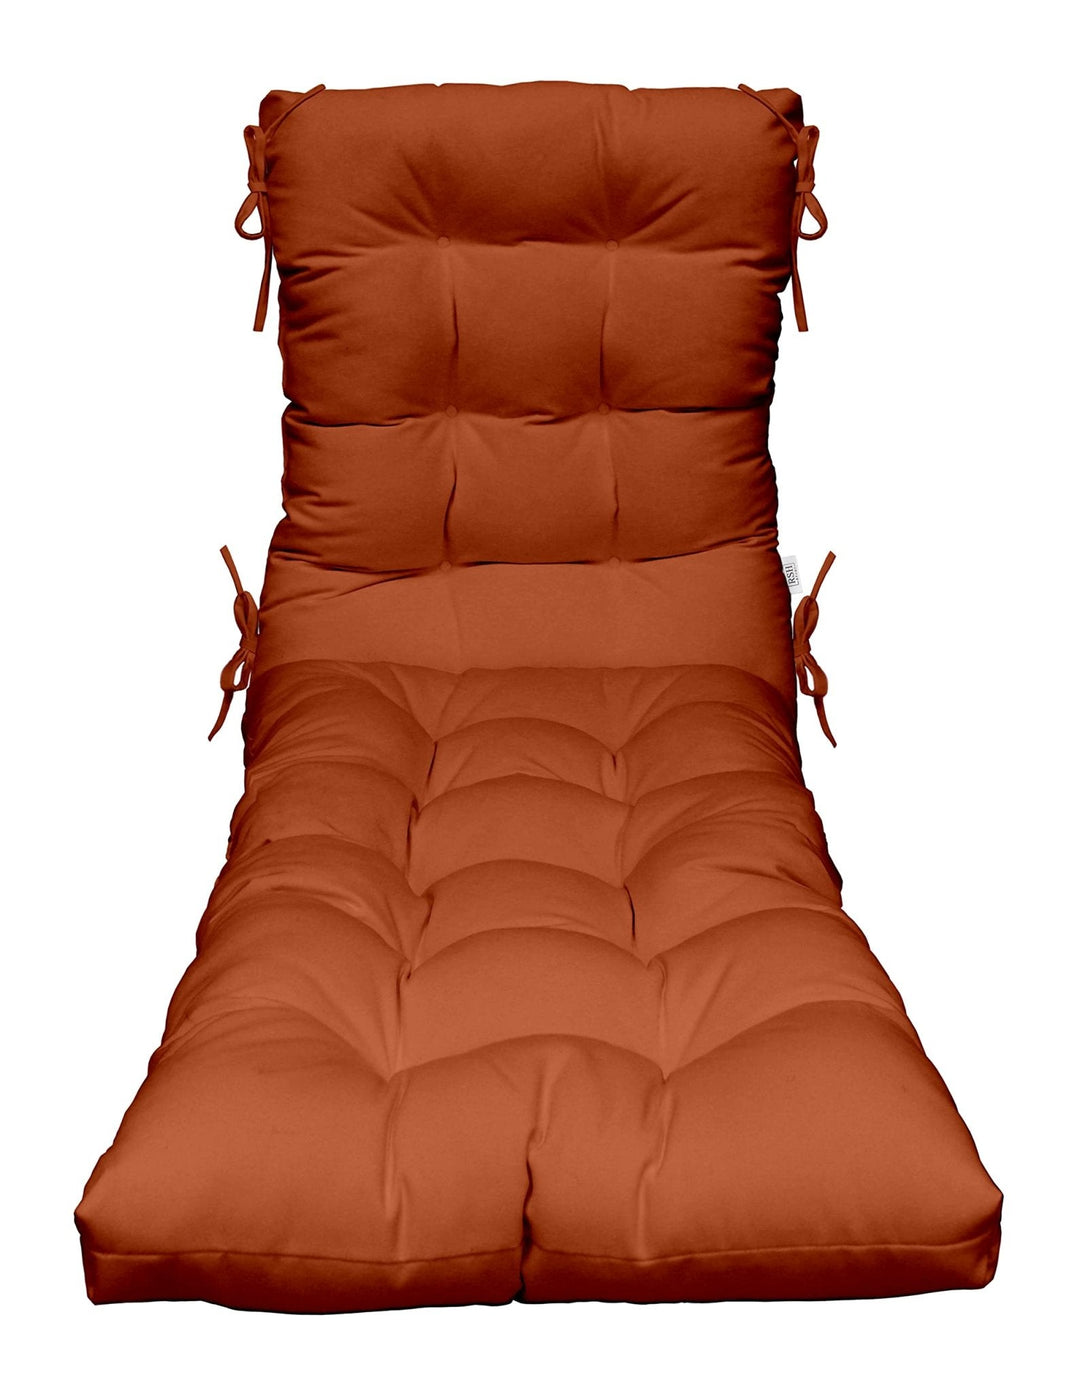 Chaise Lounge Chair Cushion | Tufted | 72" H x 22" W | Sunbrella Canvas Rust - RSH Decor